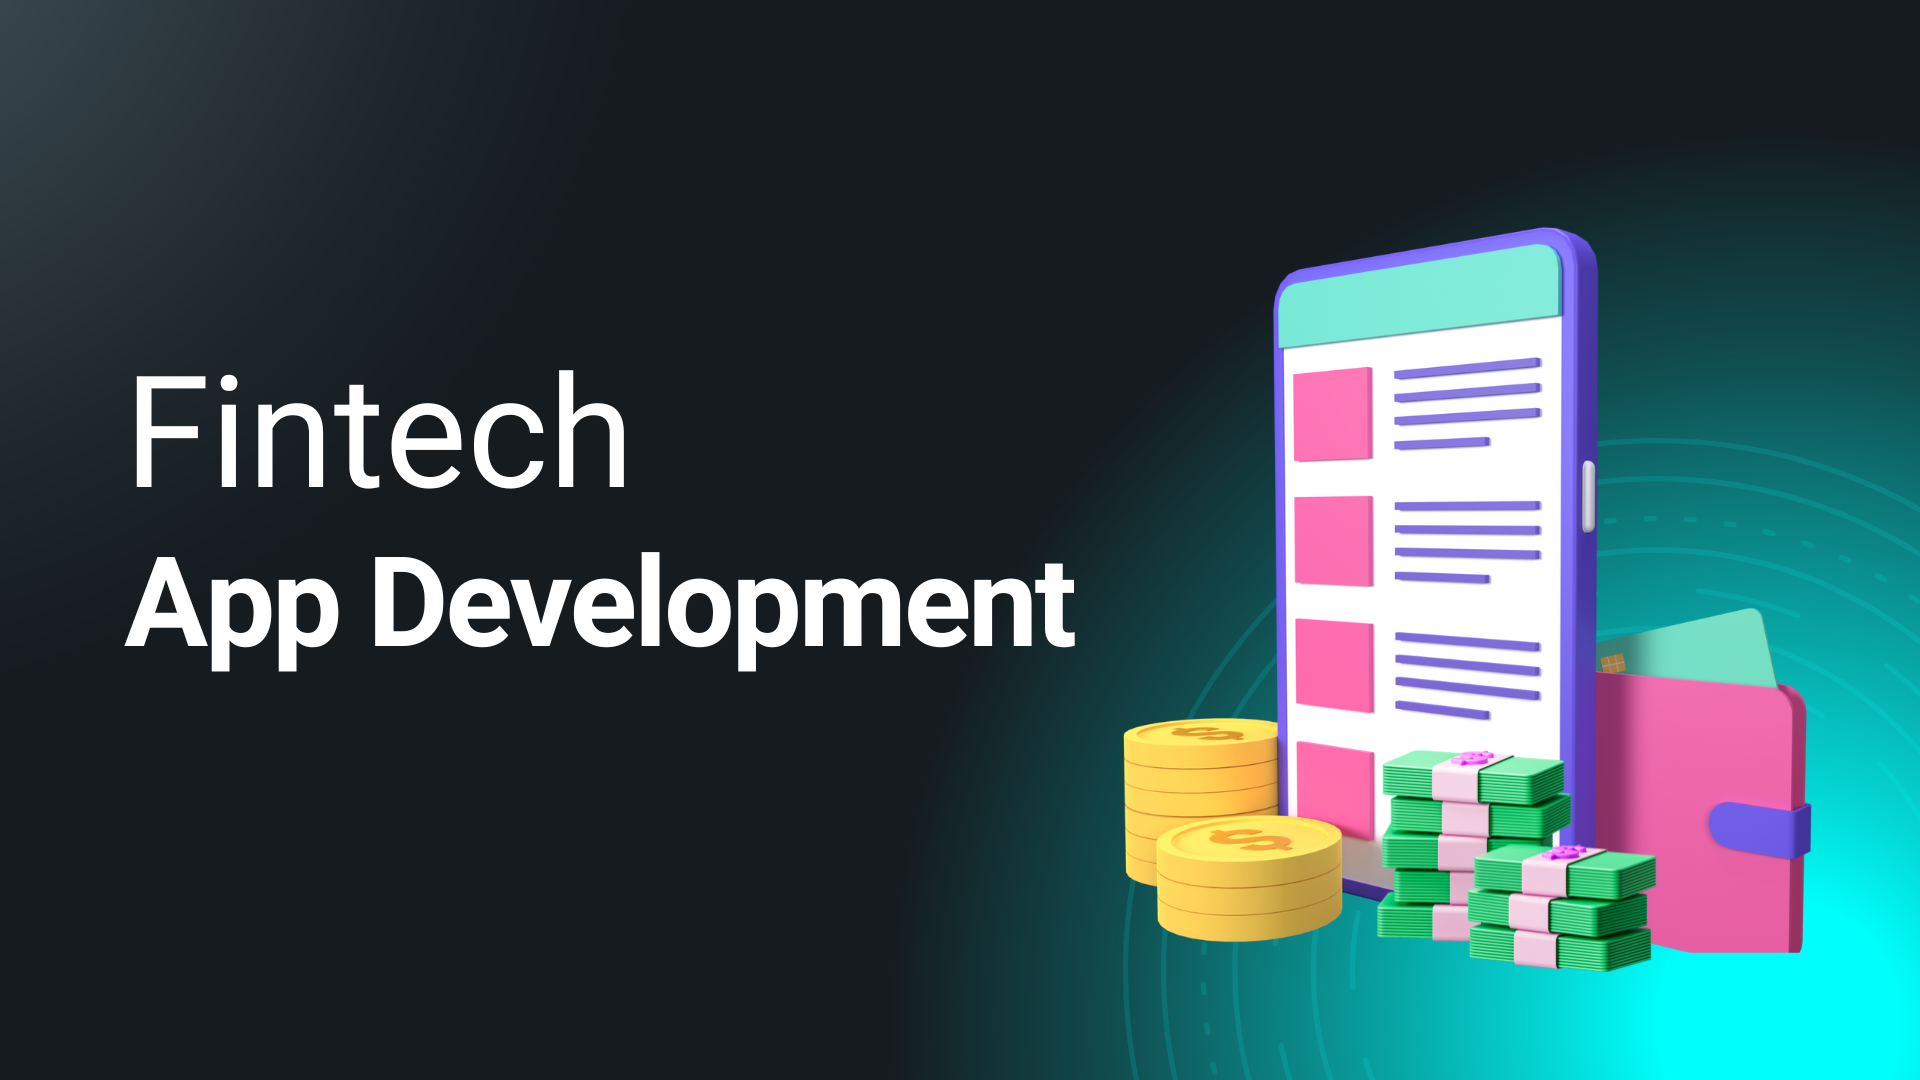 Fintech
App Development